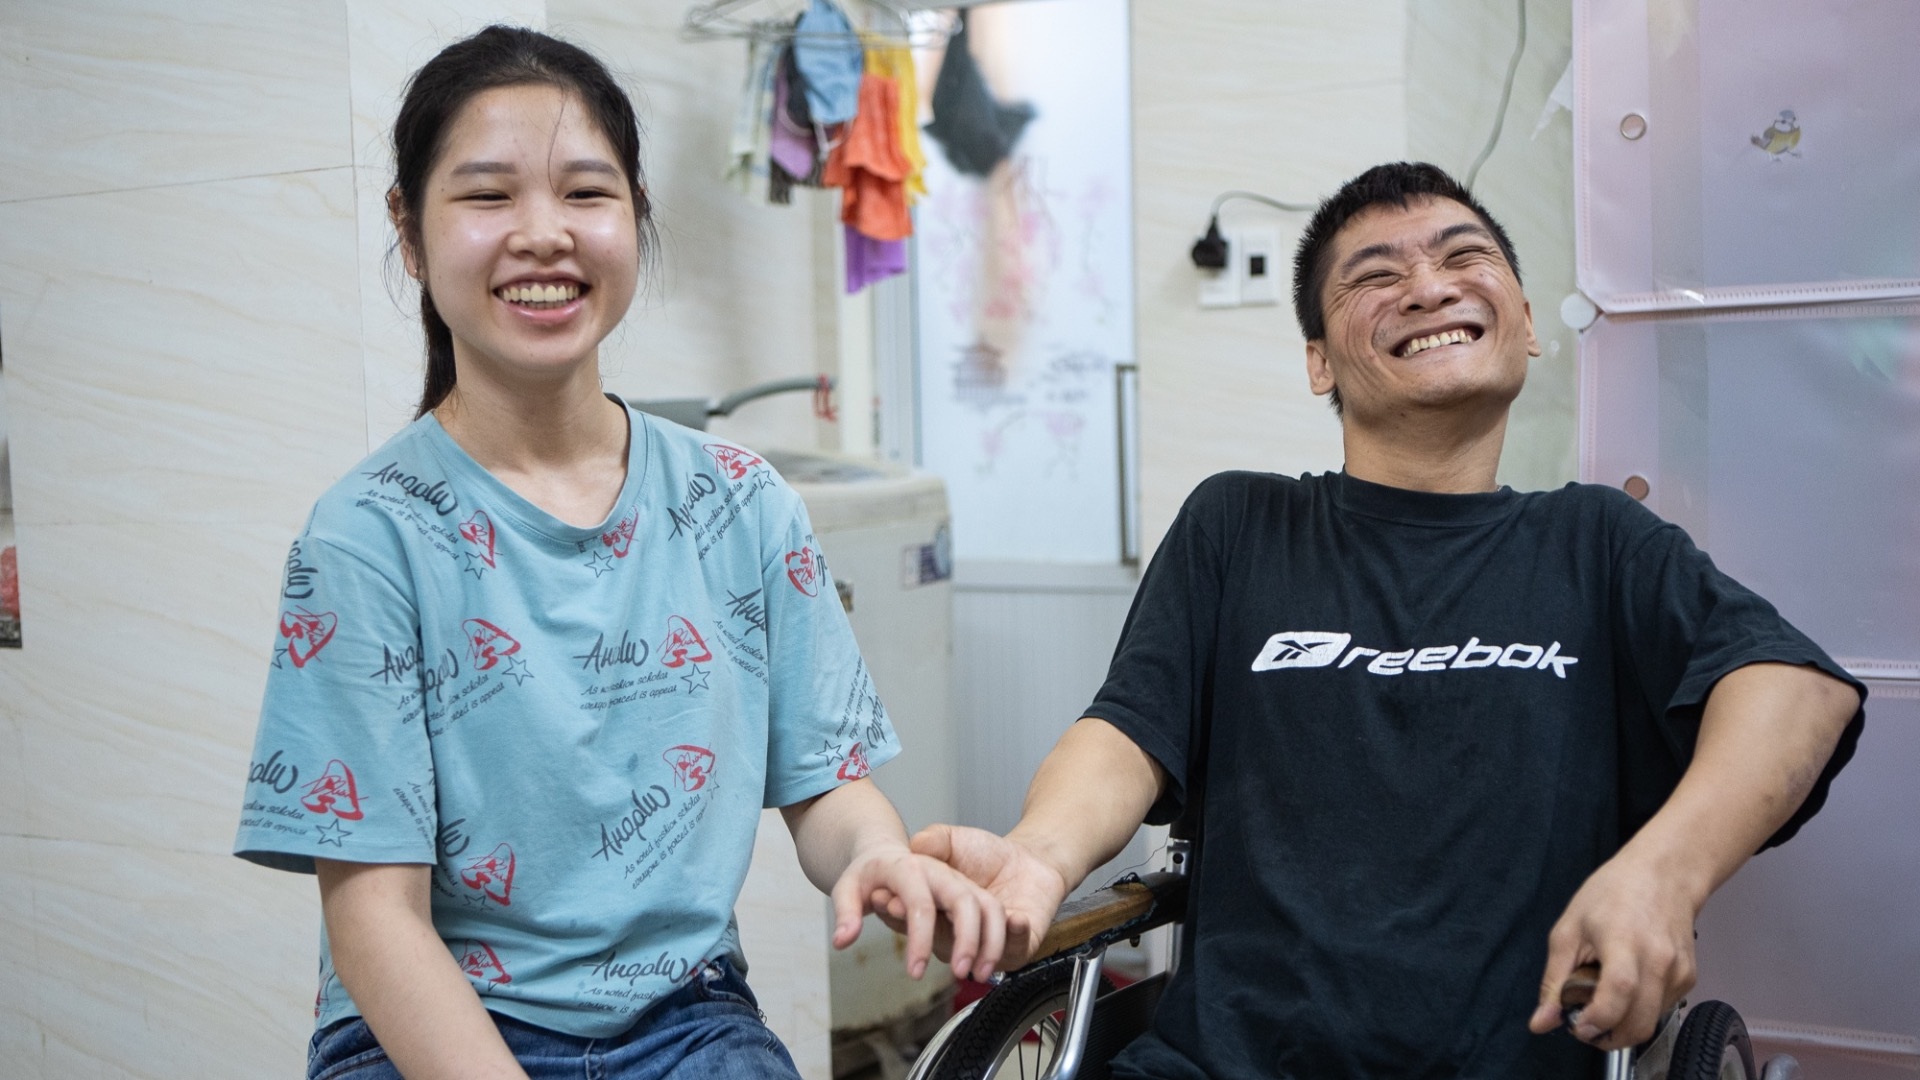 Chuyện tình của chàng trai bại não và cô gái khiếm thị ở Hà Nội